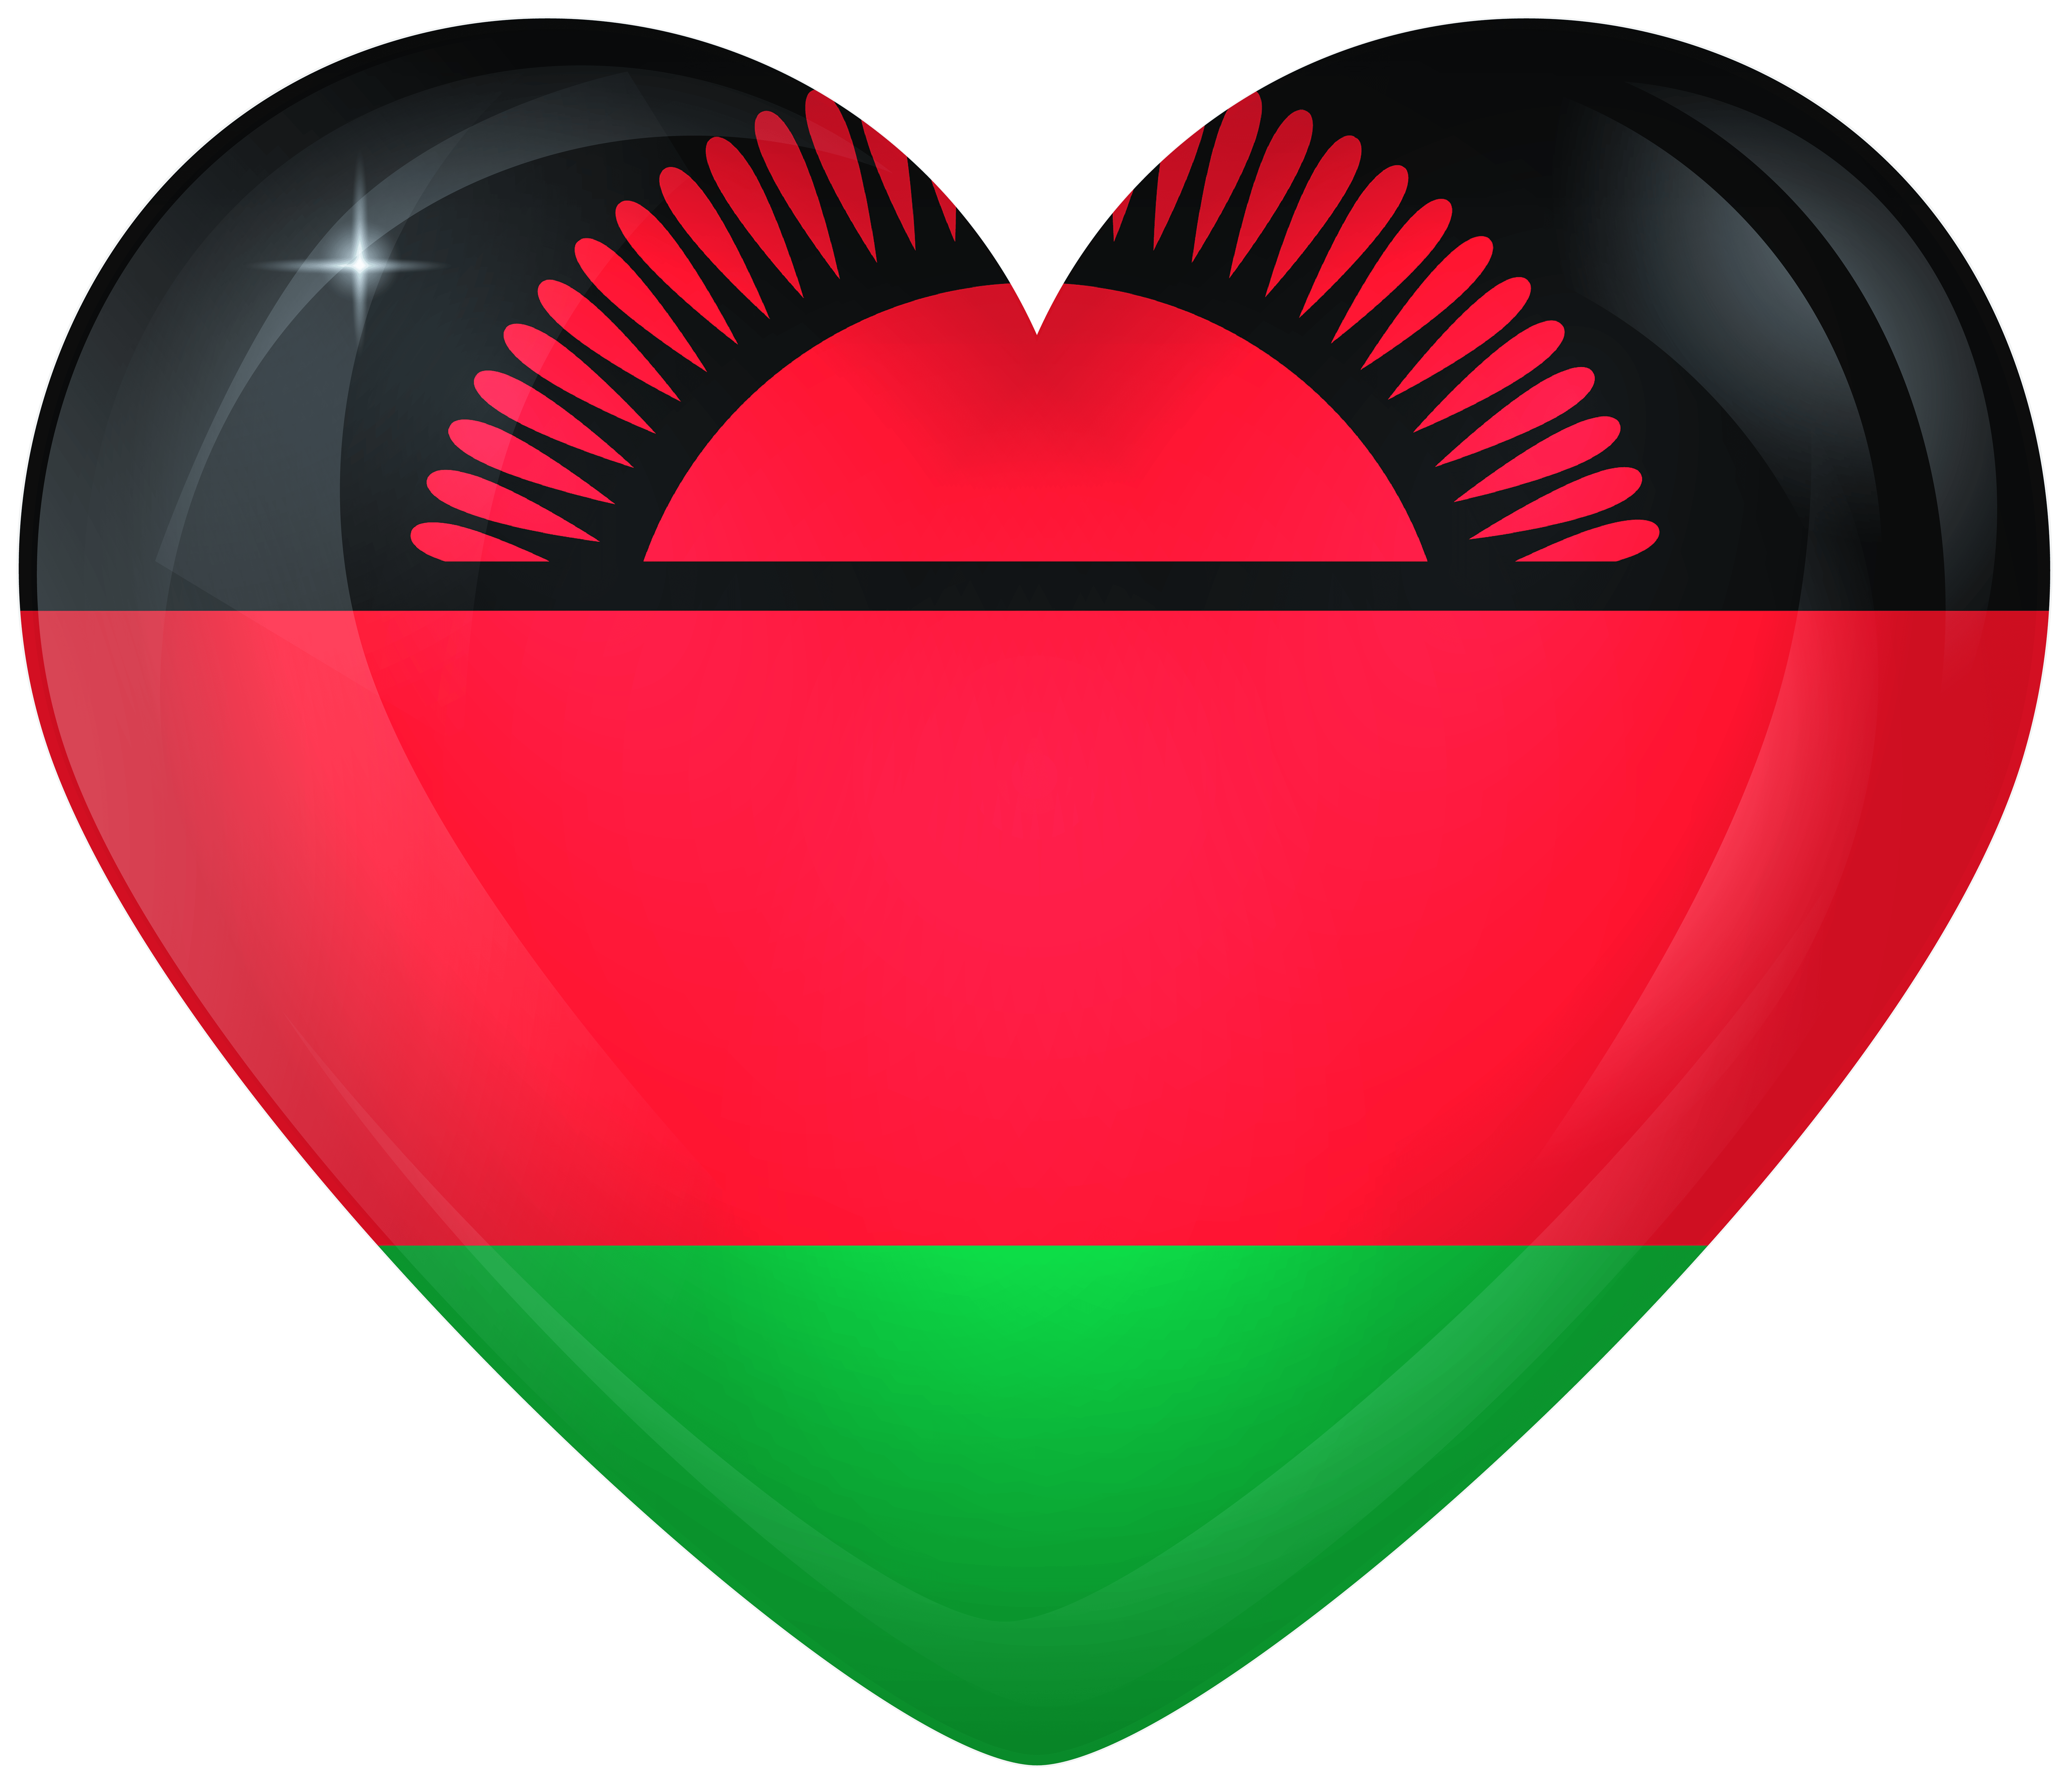 Malawi Large Heart Flag Quality